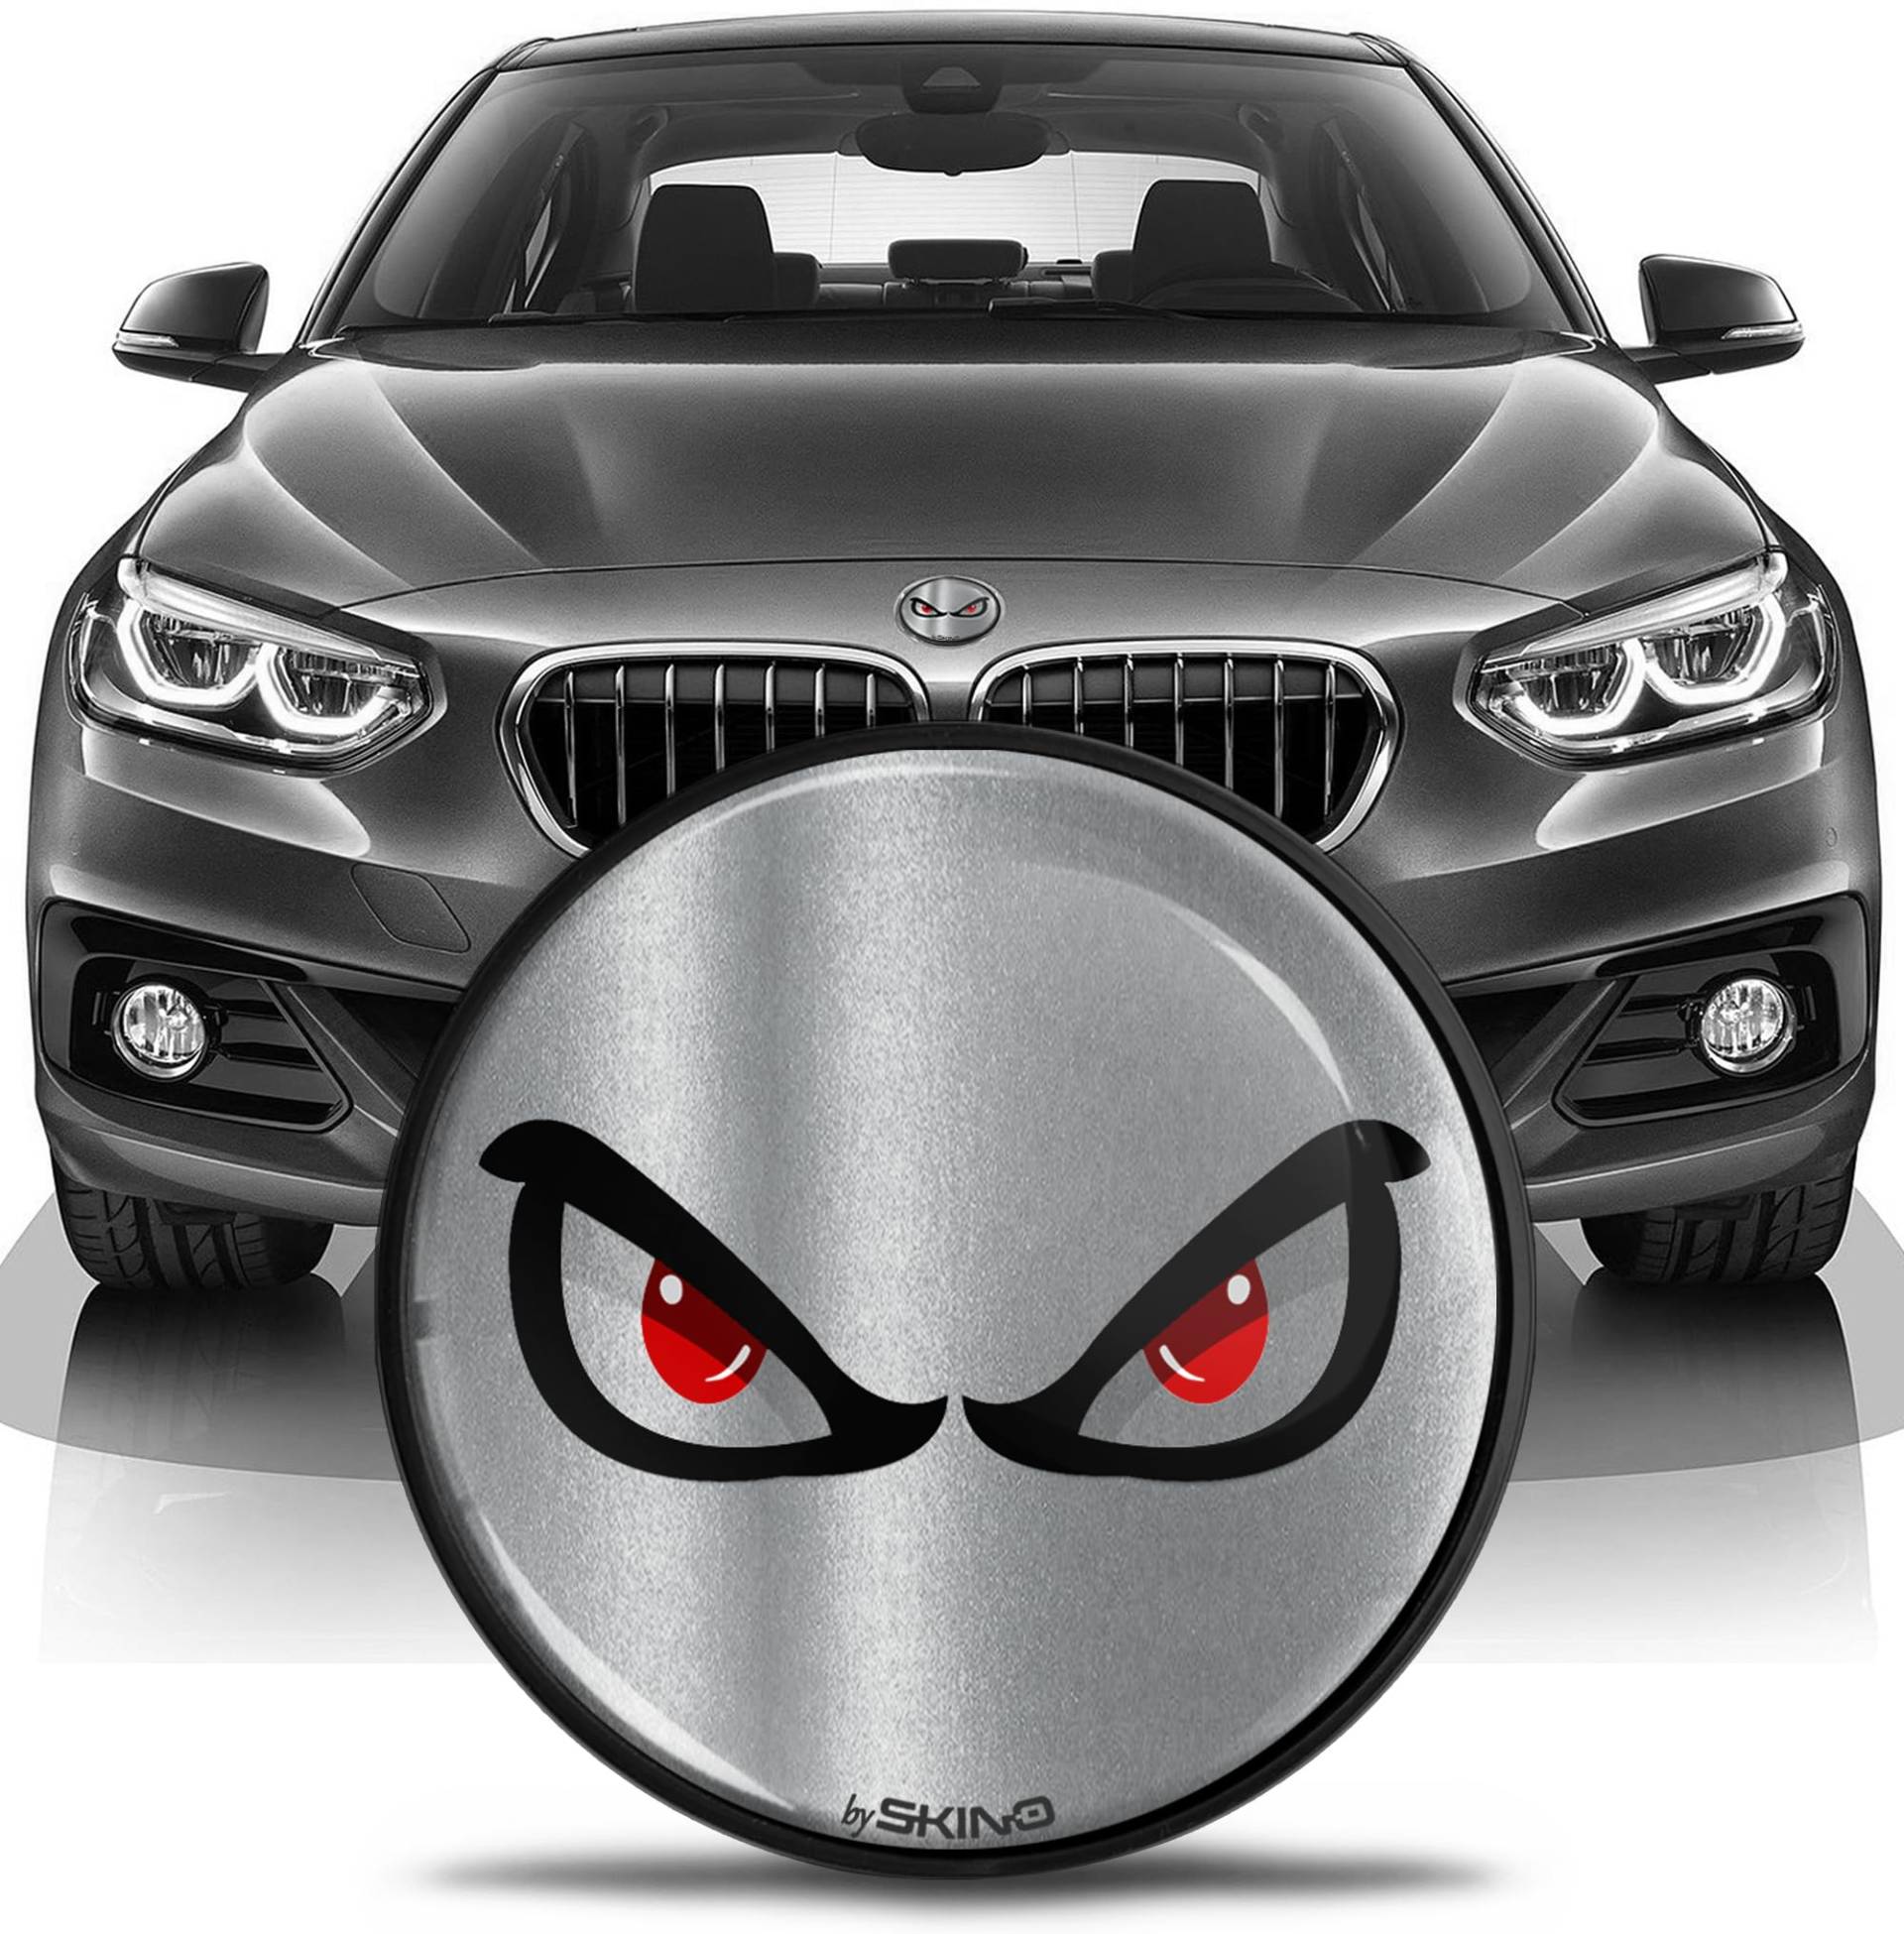 SkinoEu Kompatibel mit BMW Emblem 51147057794 für Motorhaube Kofferraum Plakette Abzeichen Heckklappe 82mm E81 E87 F07 GT F10 F11 F18 E63 E64 F06 GC F12 F13 Z4 E85 / E86 No Fear Silber EN 8 von SkinoEu